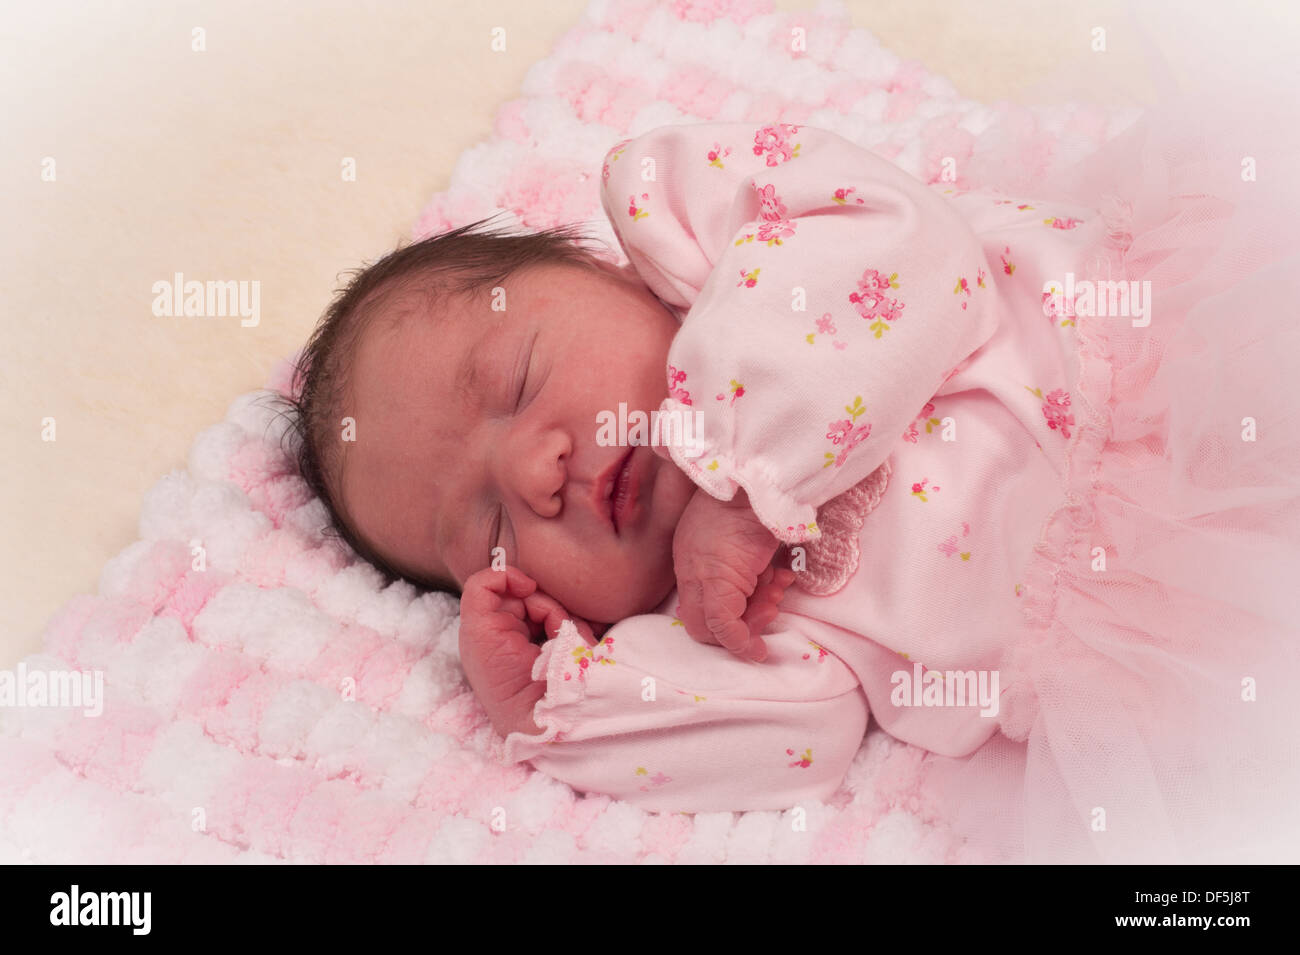 Beautiful newborn baby girl in pink on handmade blanket Stock Photo